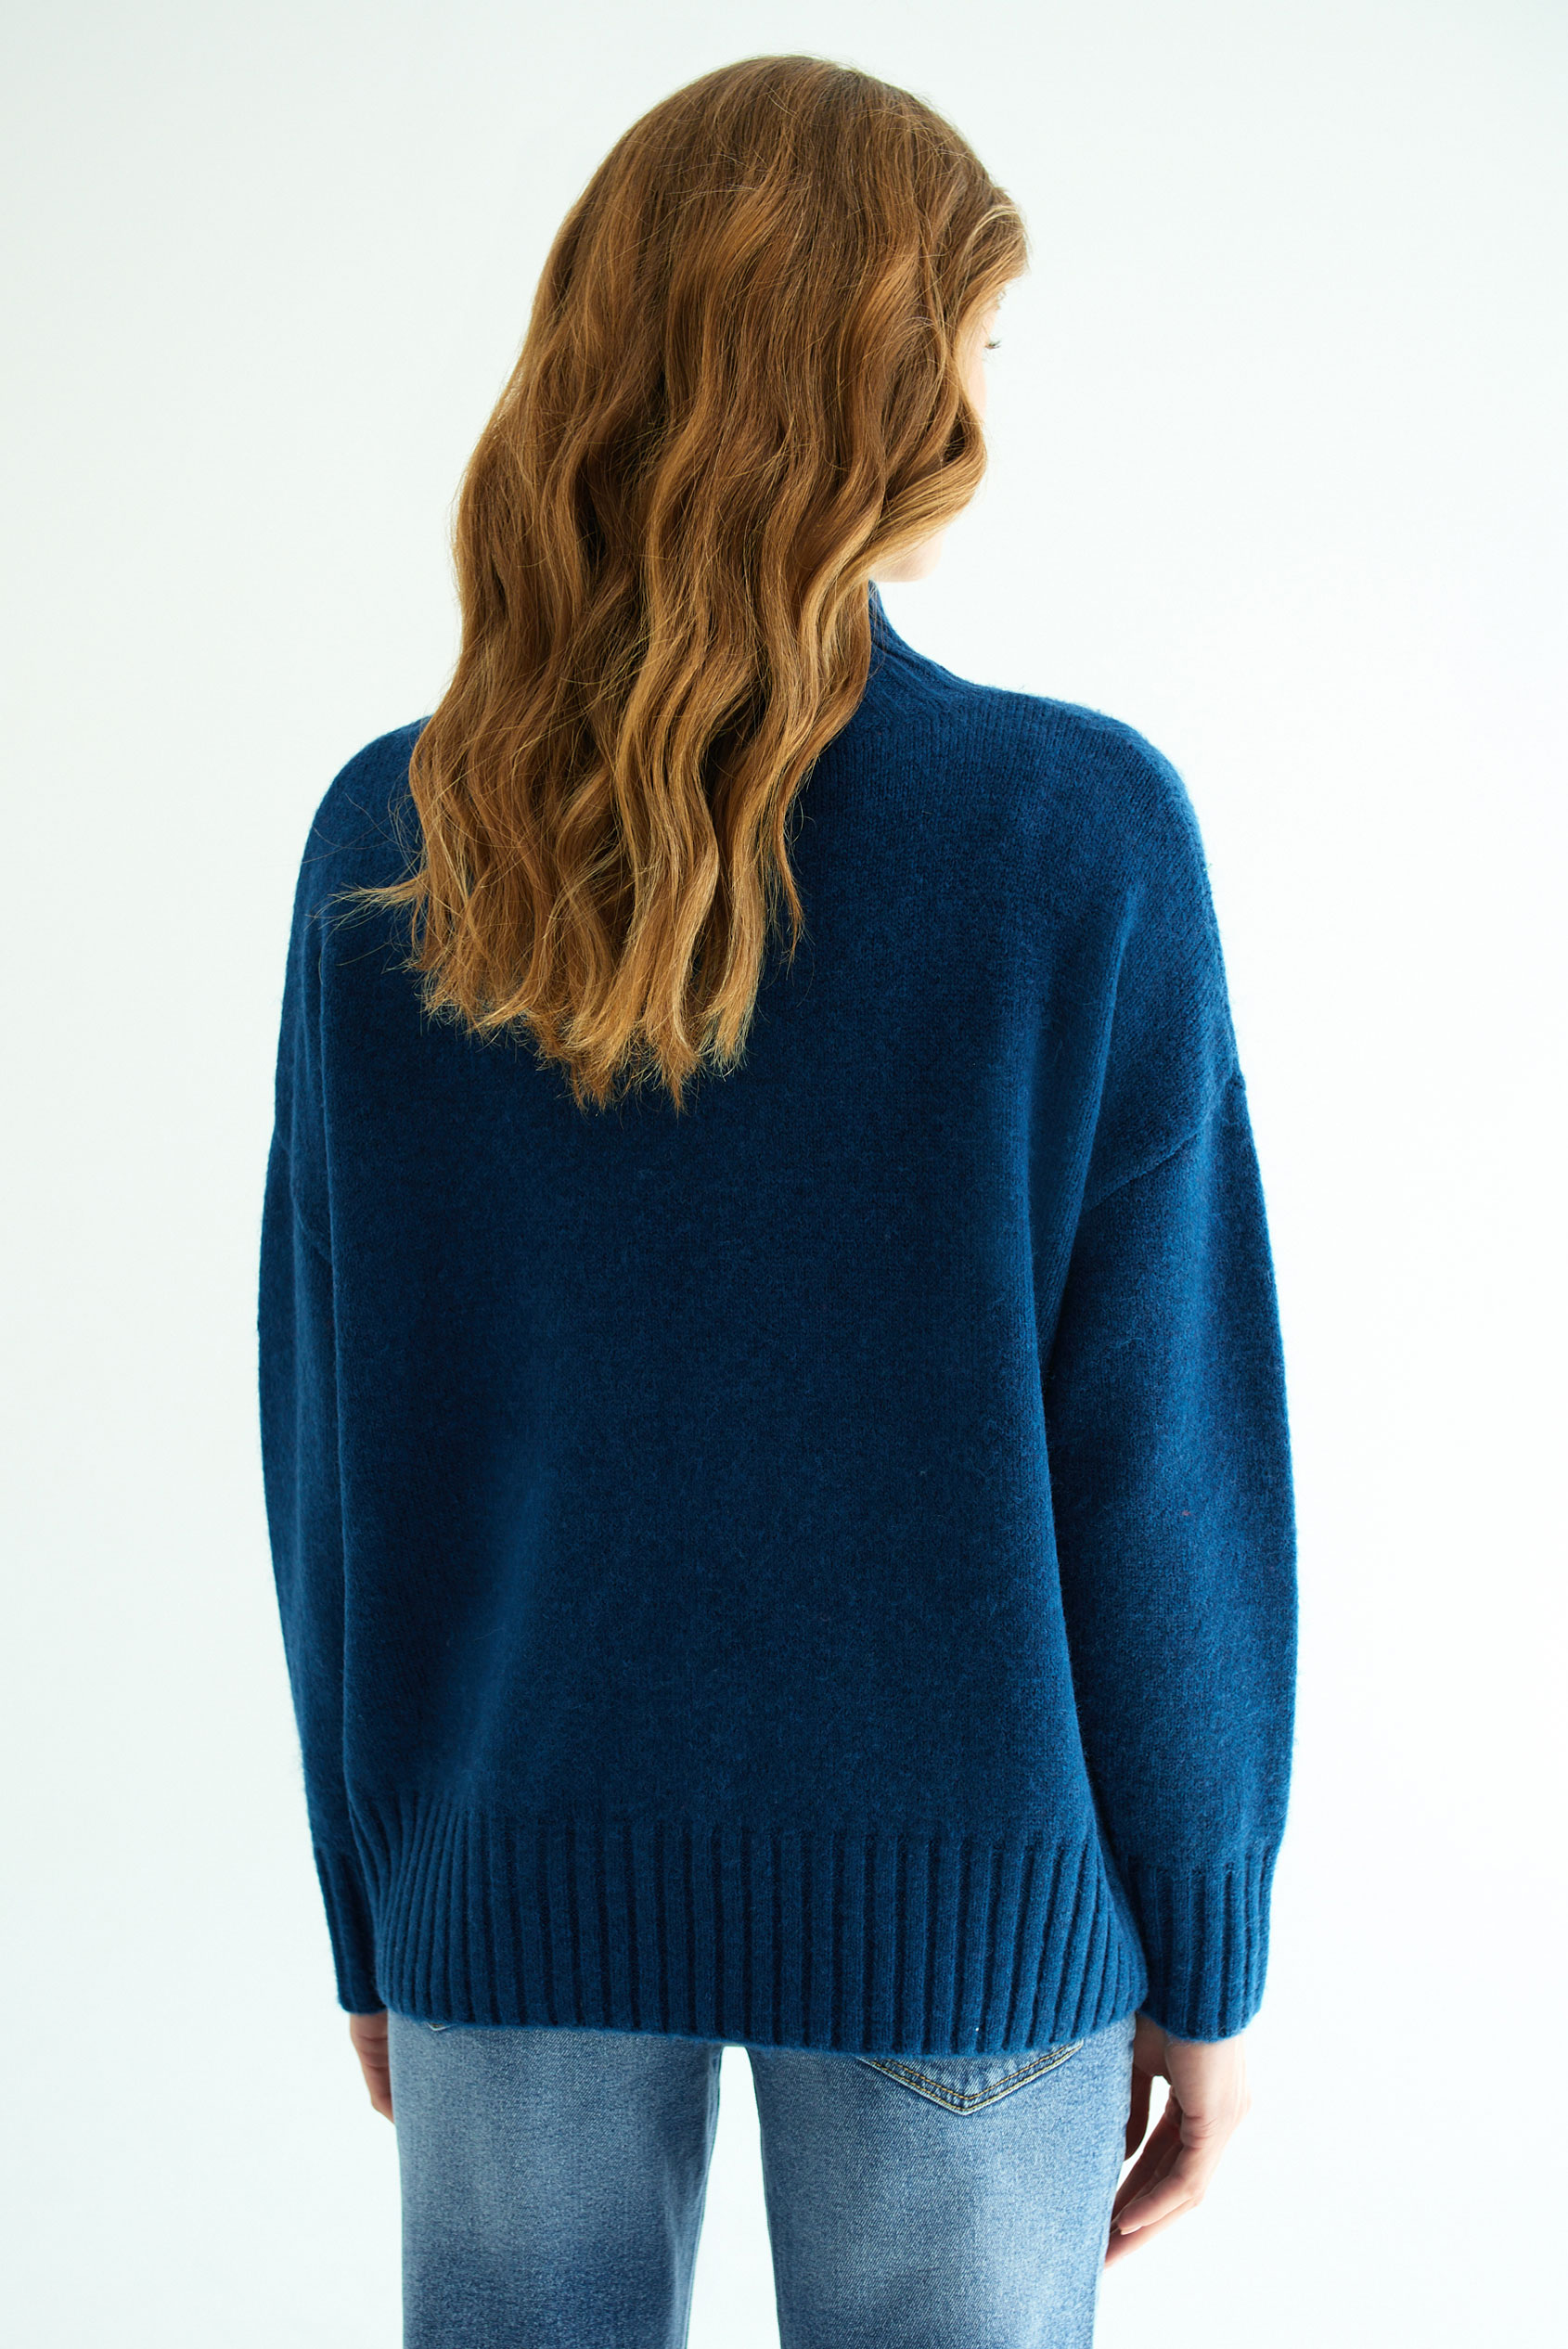 Ciemnoniebieski sweter z domieszką wełny, półgolf